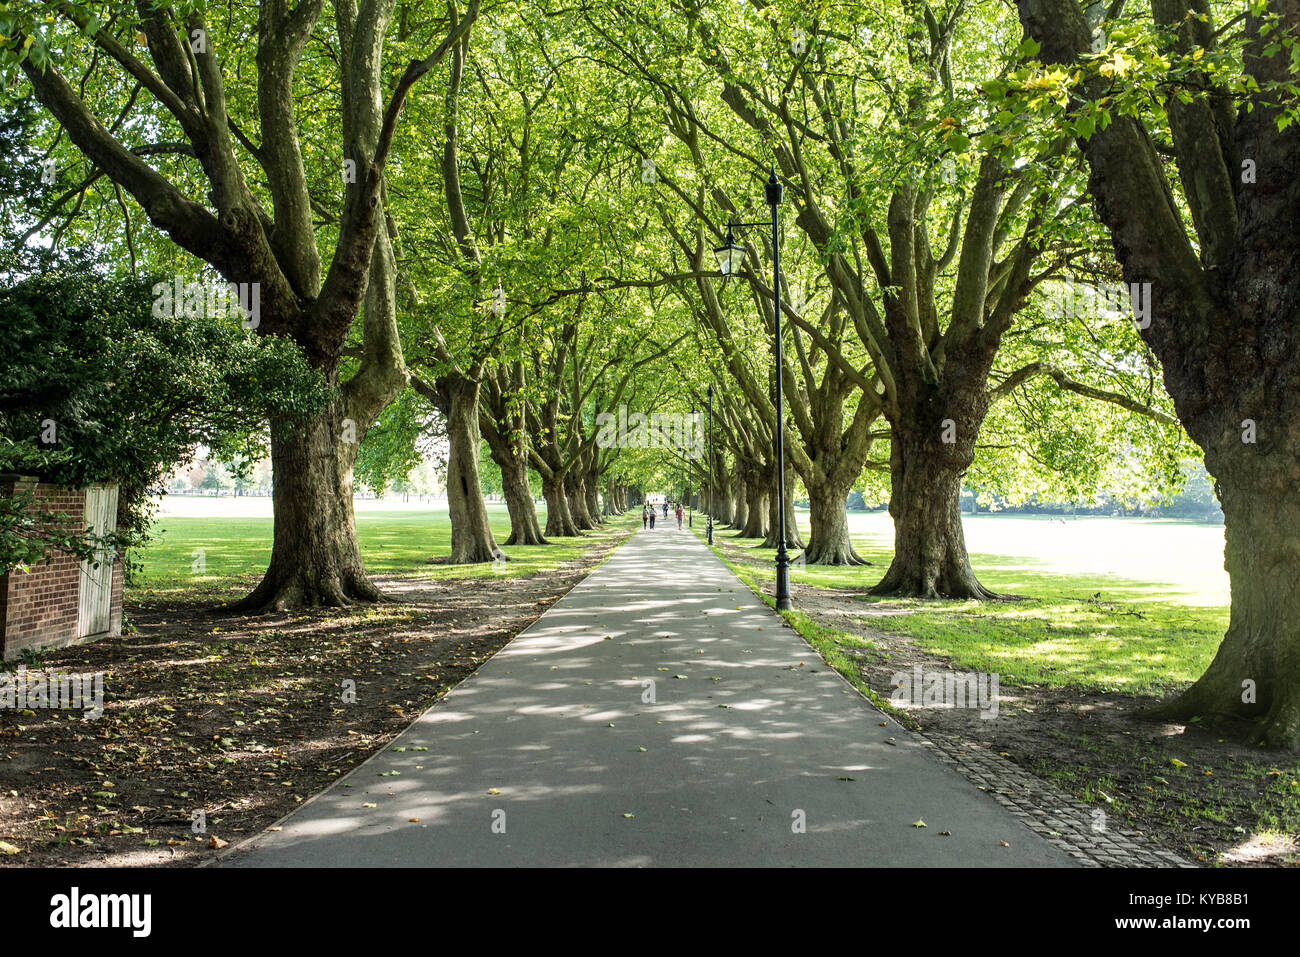 Longs et droits avenue dans parc public avec de grands arbres sur le côté Banque D'Images